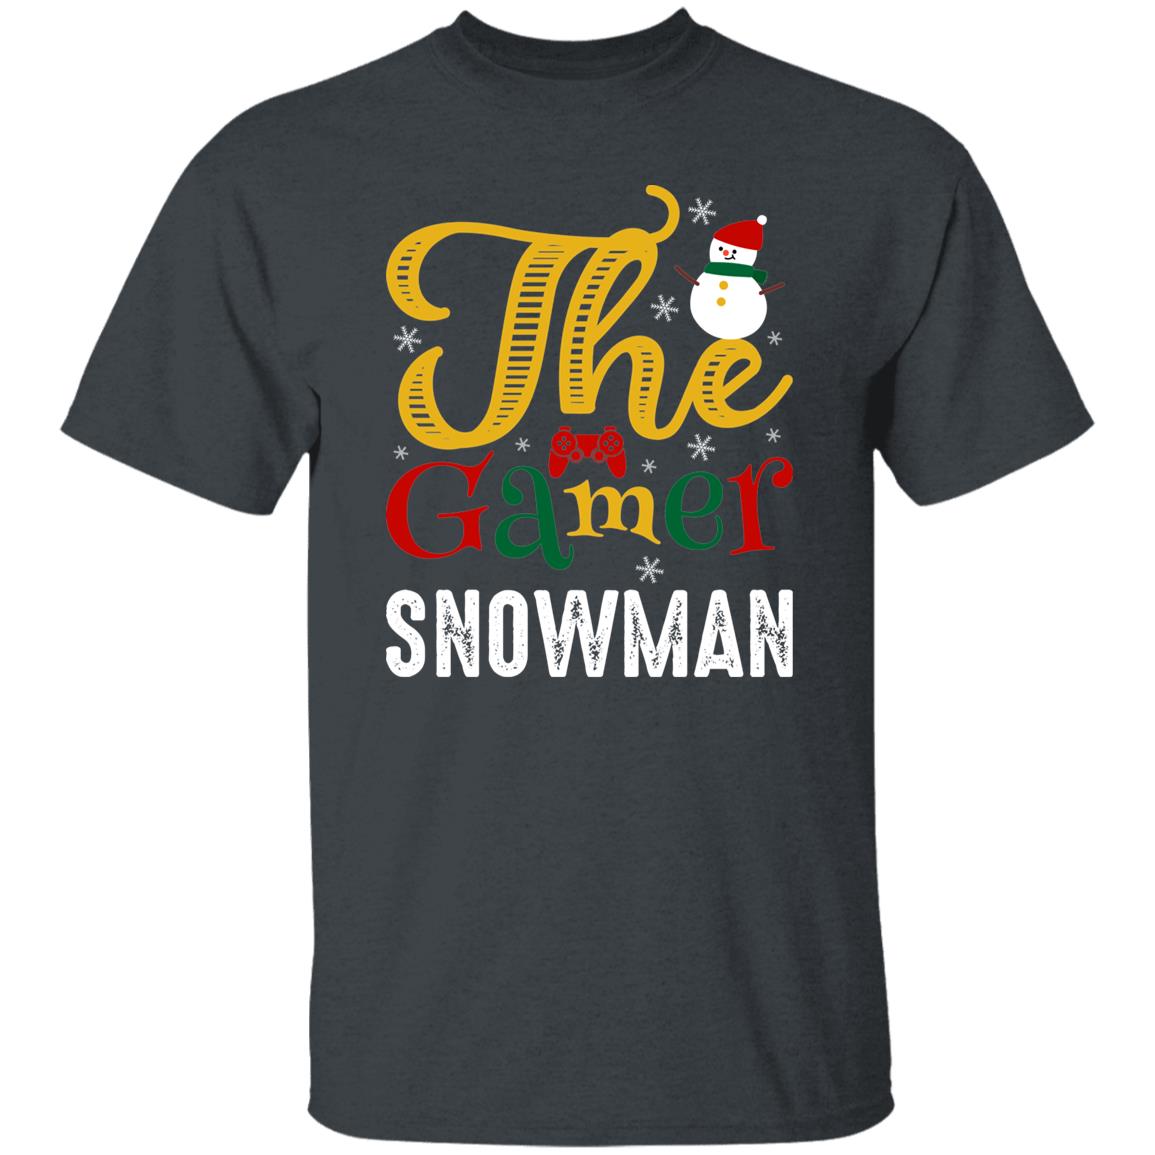 The Gamer Snowman Funny Tee Shirt Christmas Gift